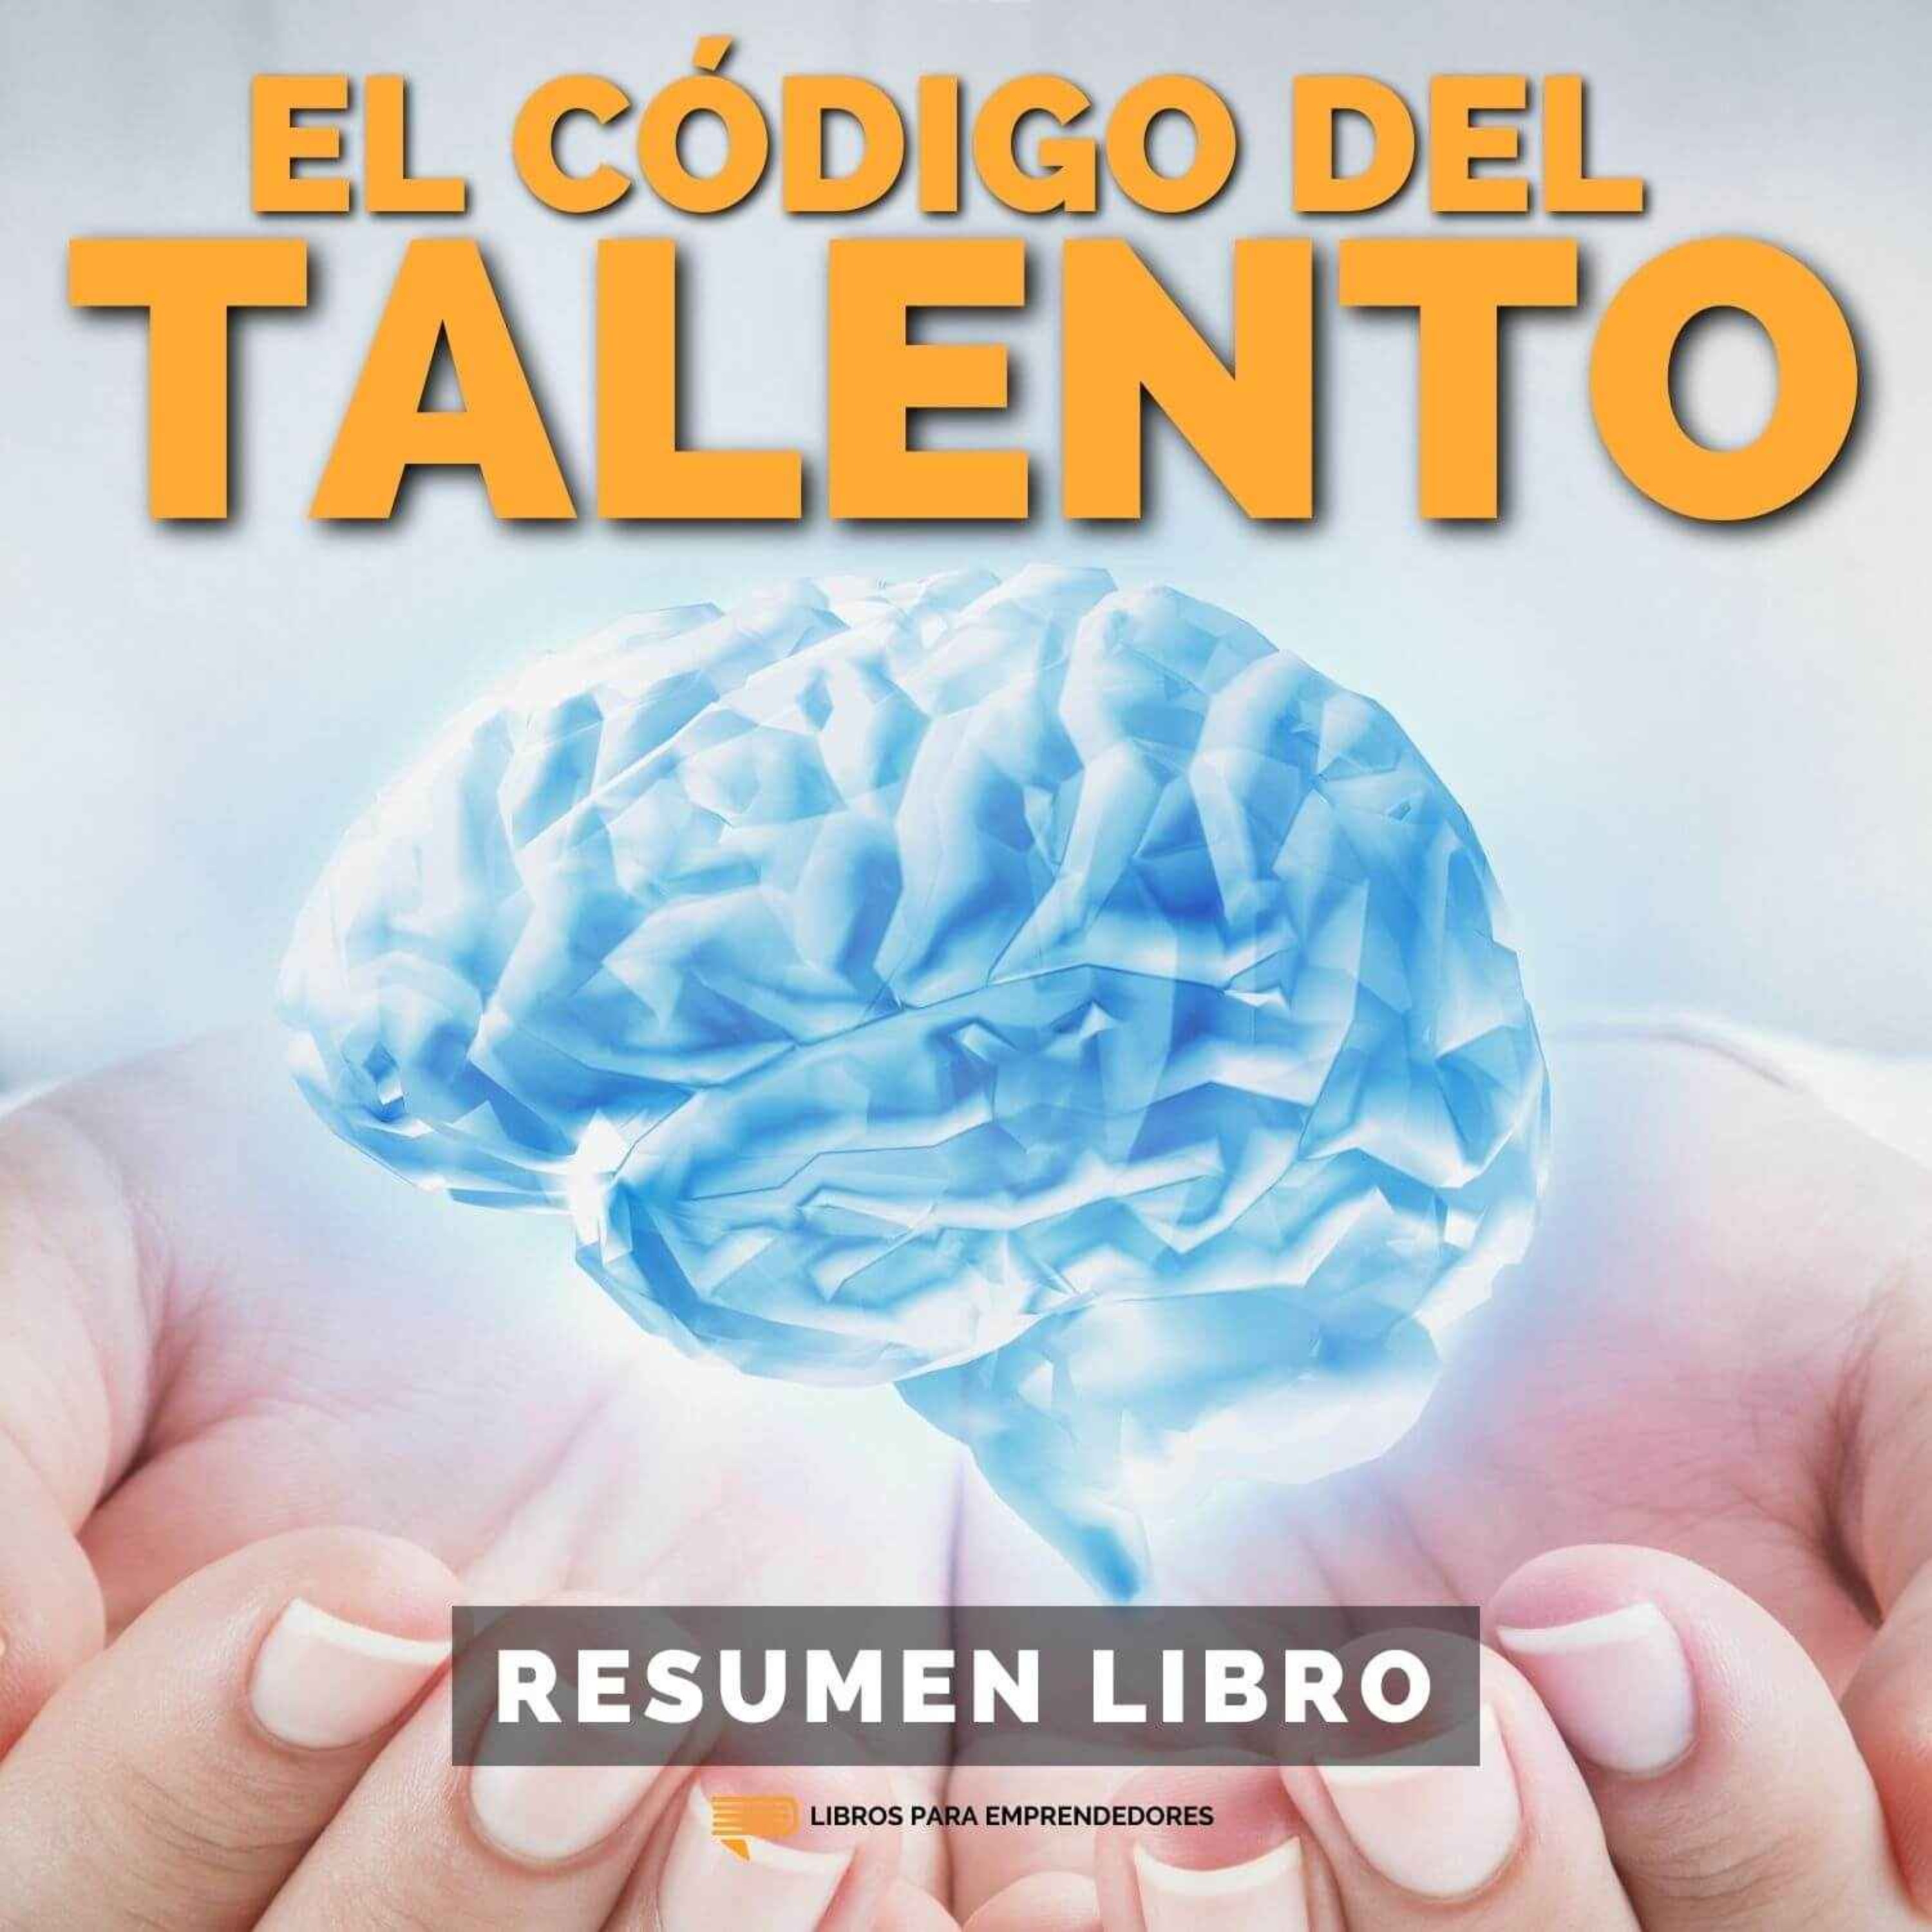 📖 El Código del Talento - Un Resumen de Libros para Emprendedores